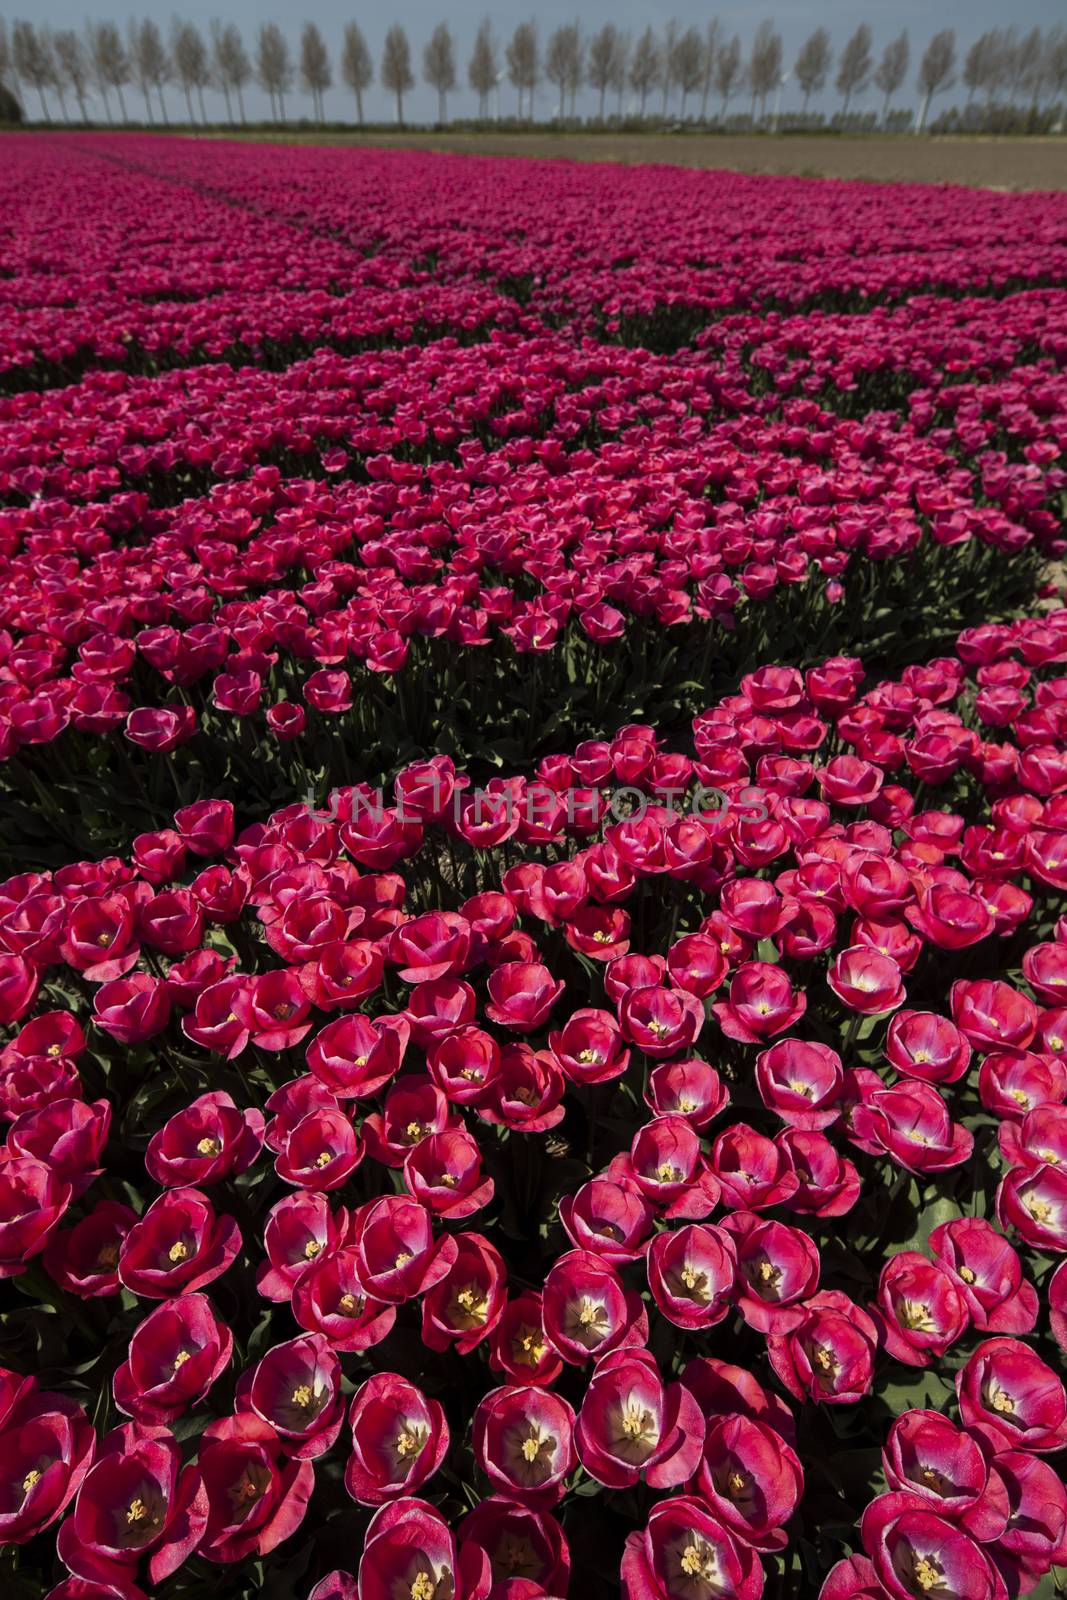 Tulips in a field in spring by JanPietruszka